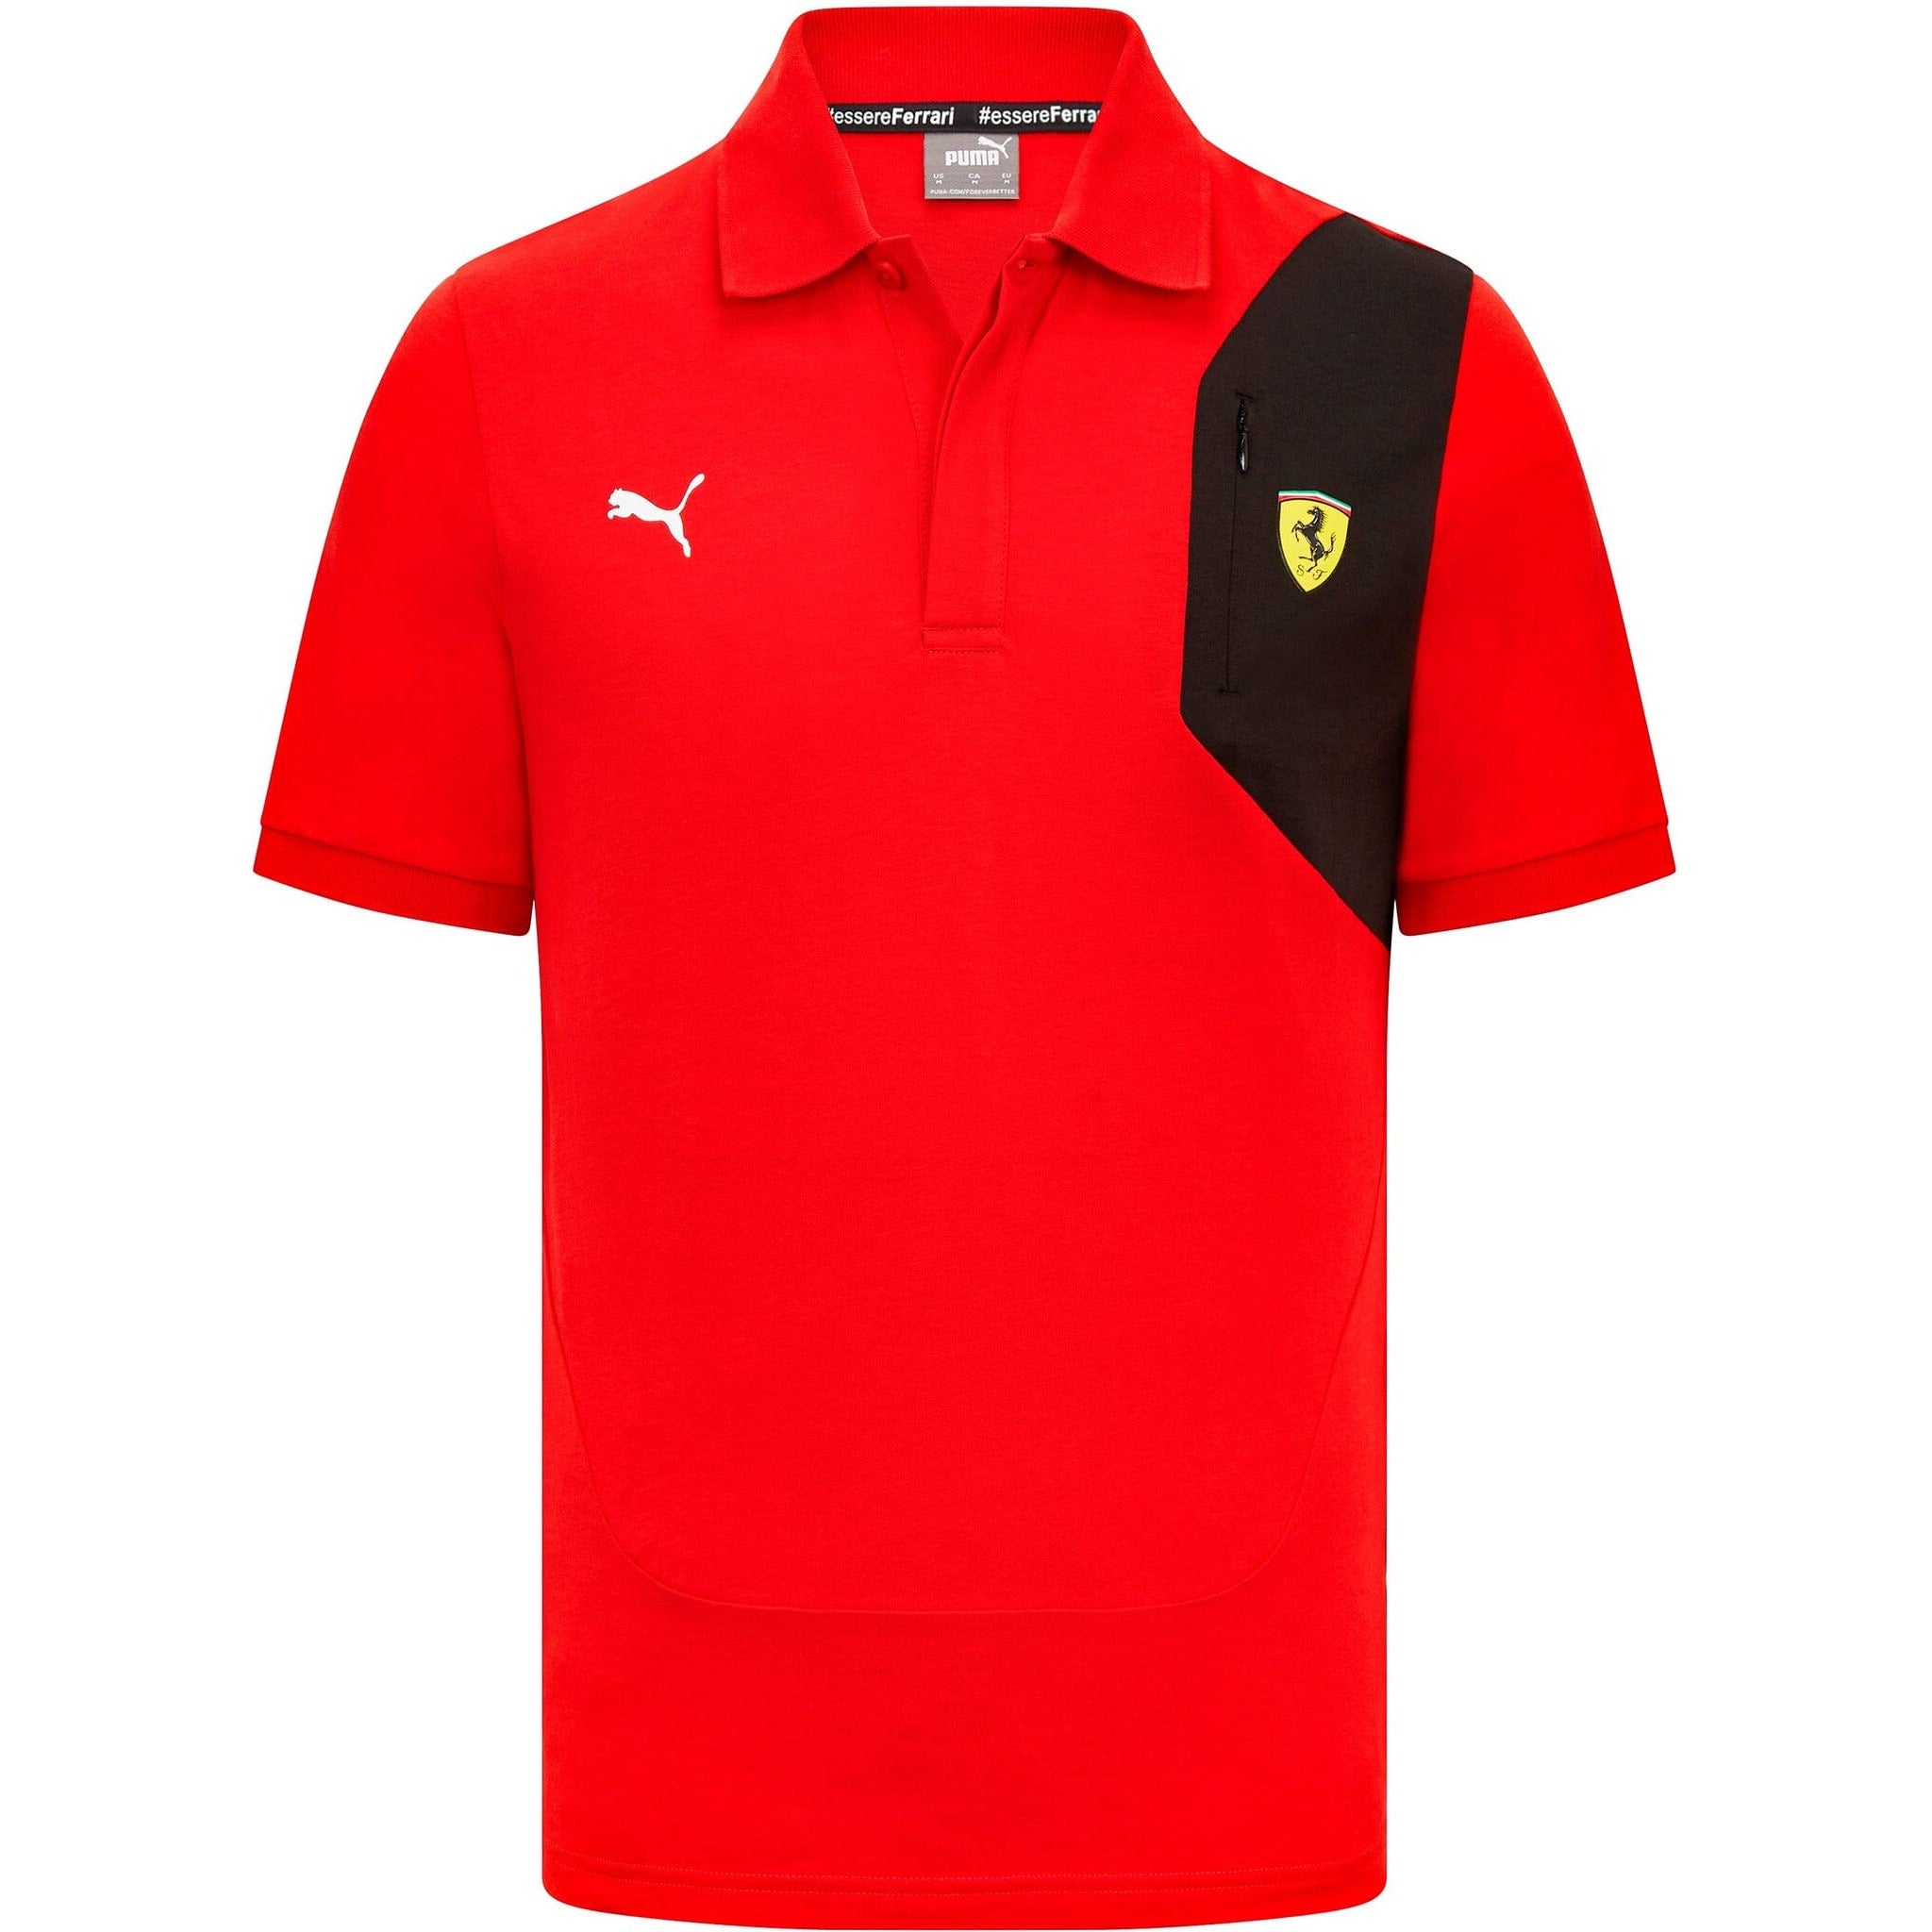 Scuderia Ferrari F1 Men's Puma Small Shield Logo Polo Shirt-Red/Black